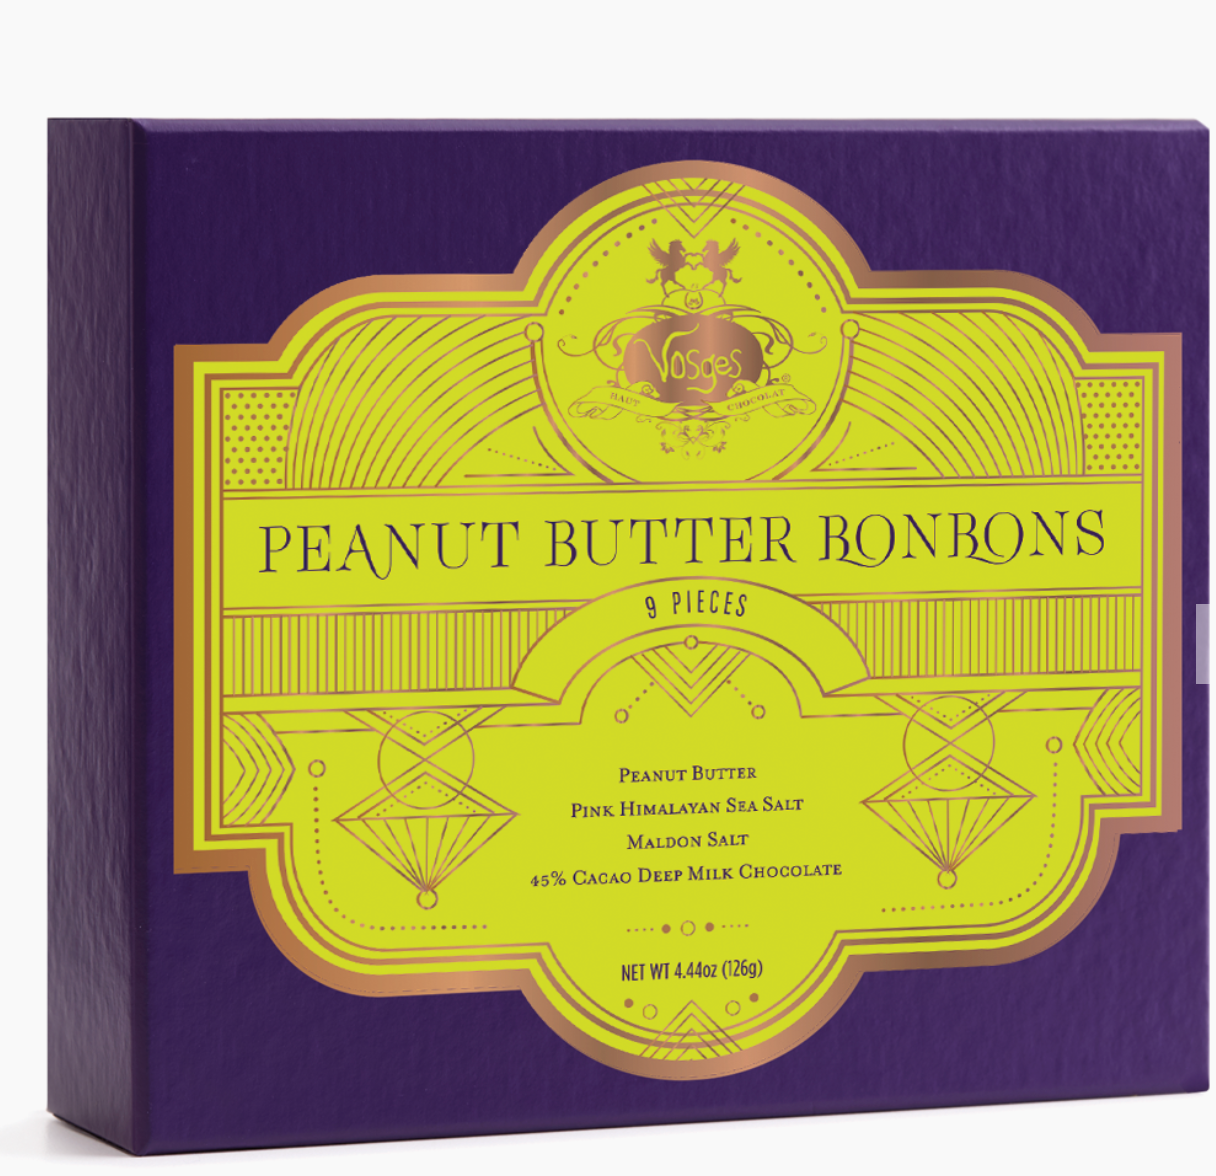 Vosges Peanut Butter Bon Bon 9 piece